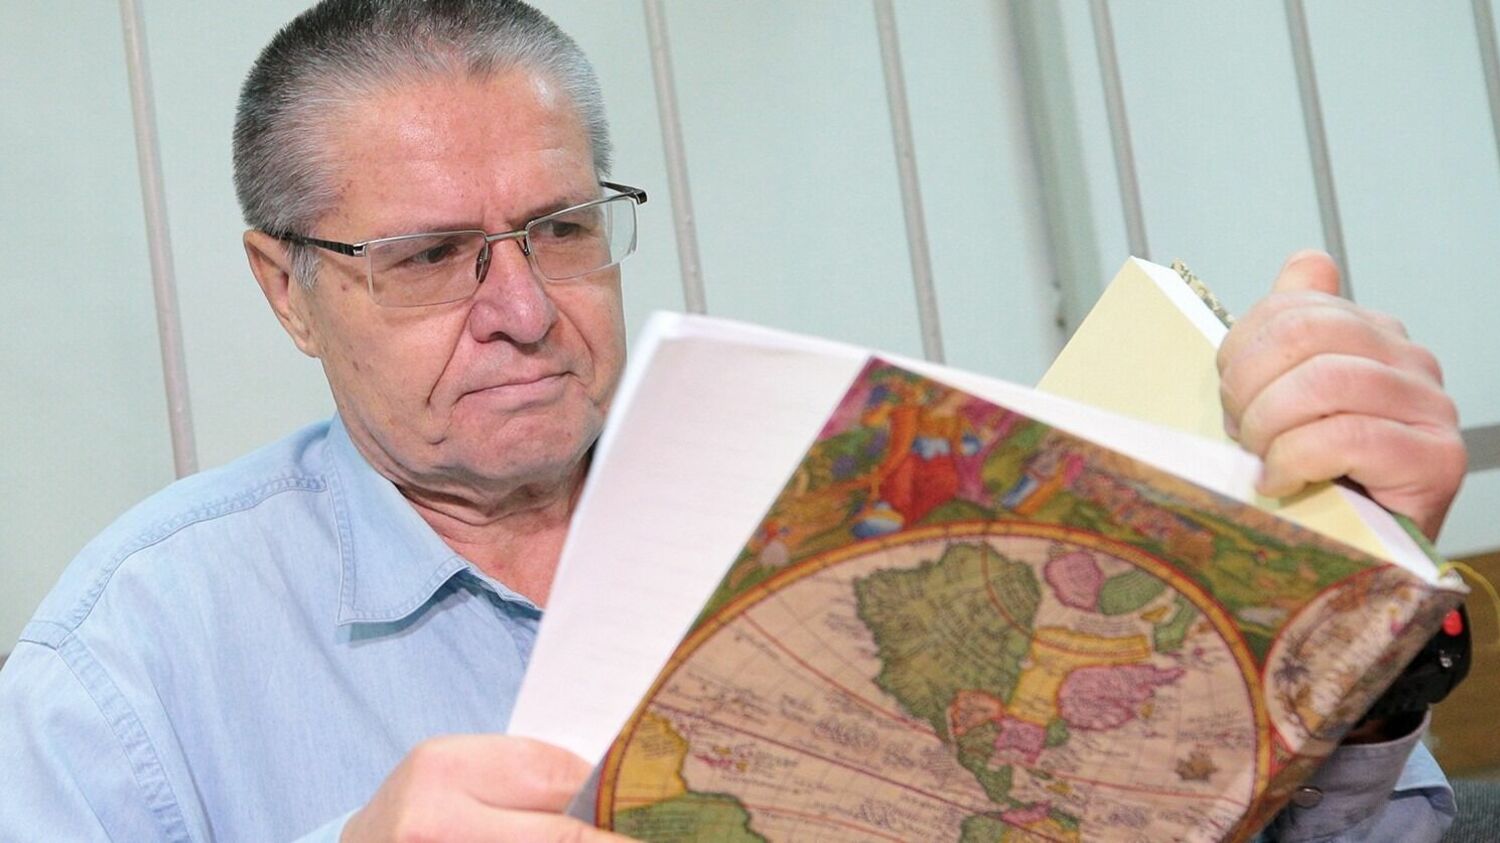 «Теперь я человек среди людей». Экс-министр читает свои стихи в московской рюмочной